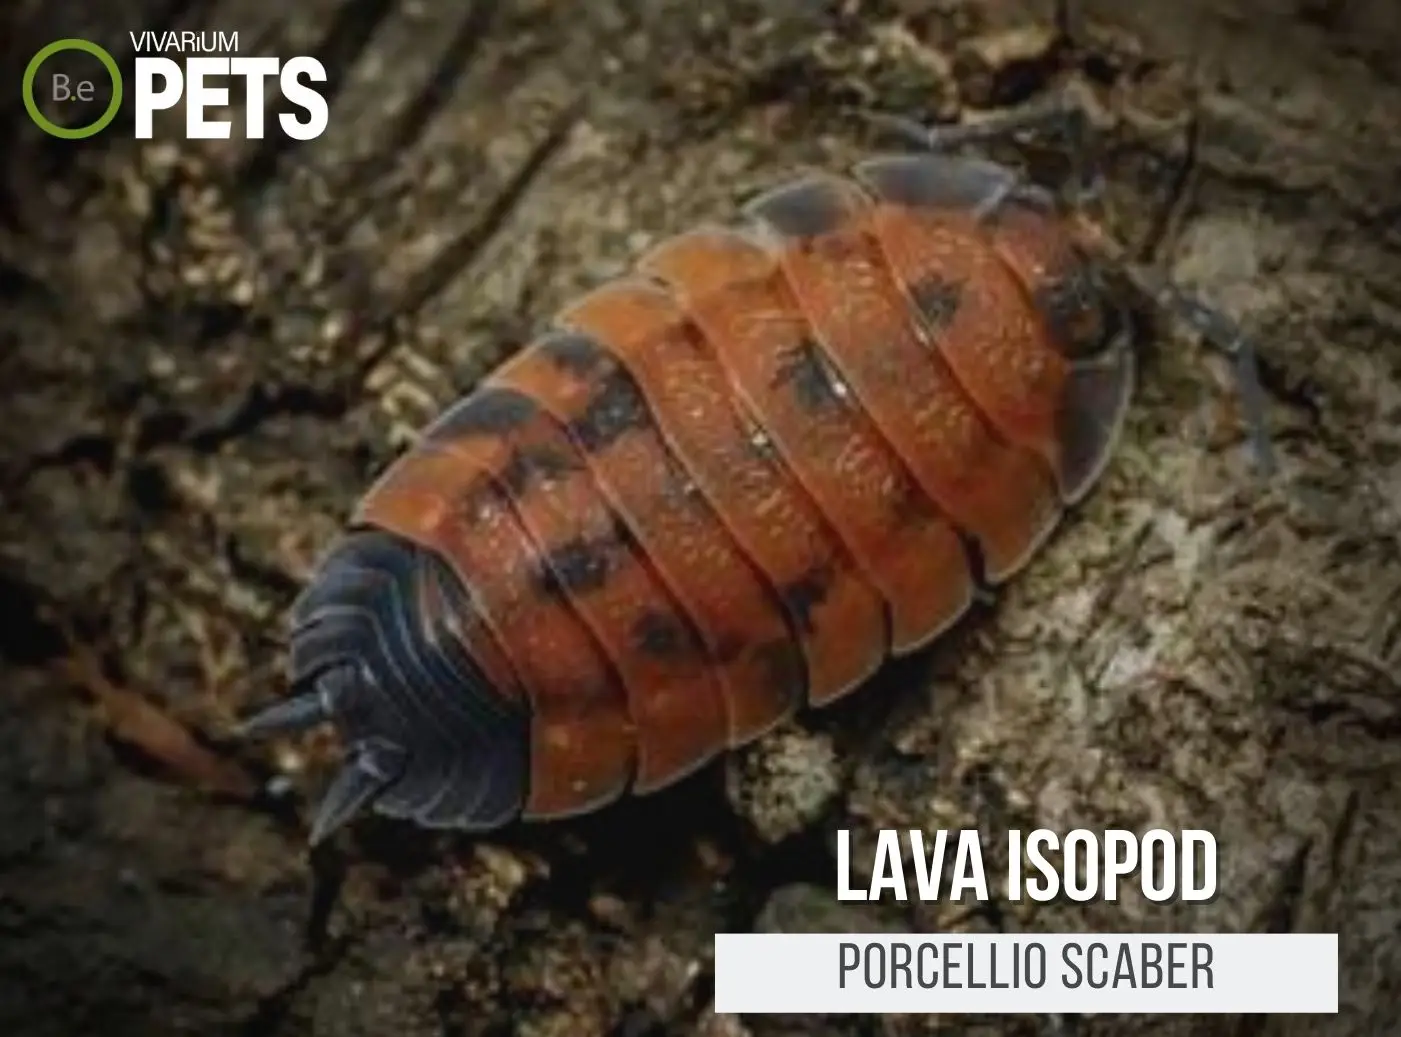 The Complete Porcellio scaber "Lava Isopods" Care Guide!